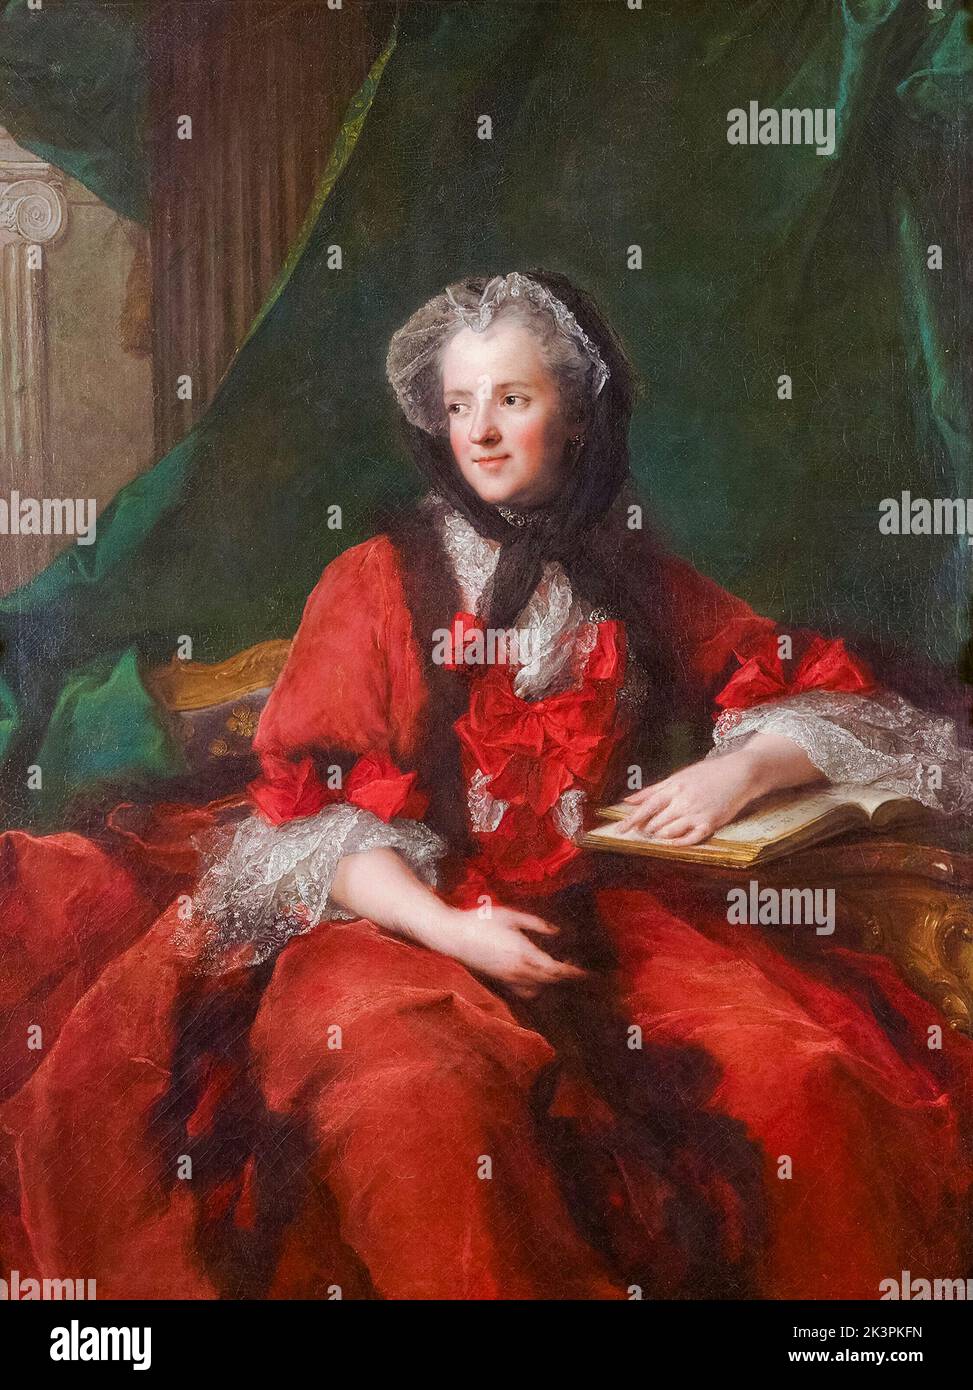 Marie Leszczyńska (1703-1768), Reine Consort de France, portrait peint à l'huile sur toile par Jean-Marc Nattier, 1748 Banque D'Images